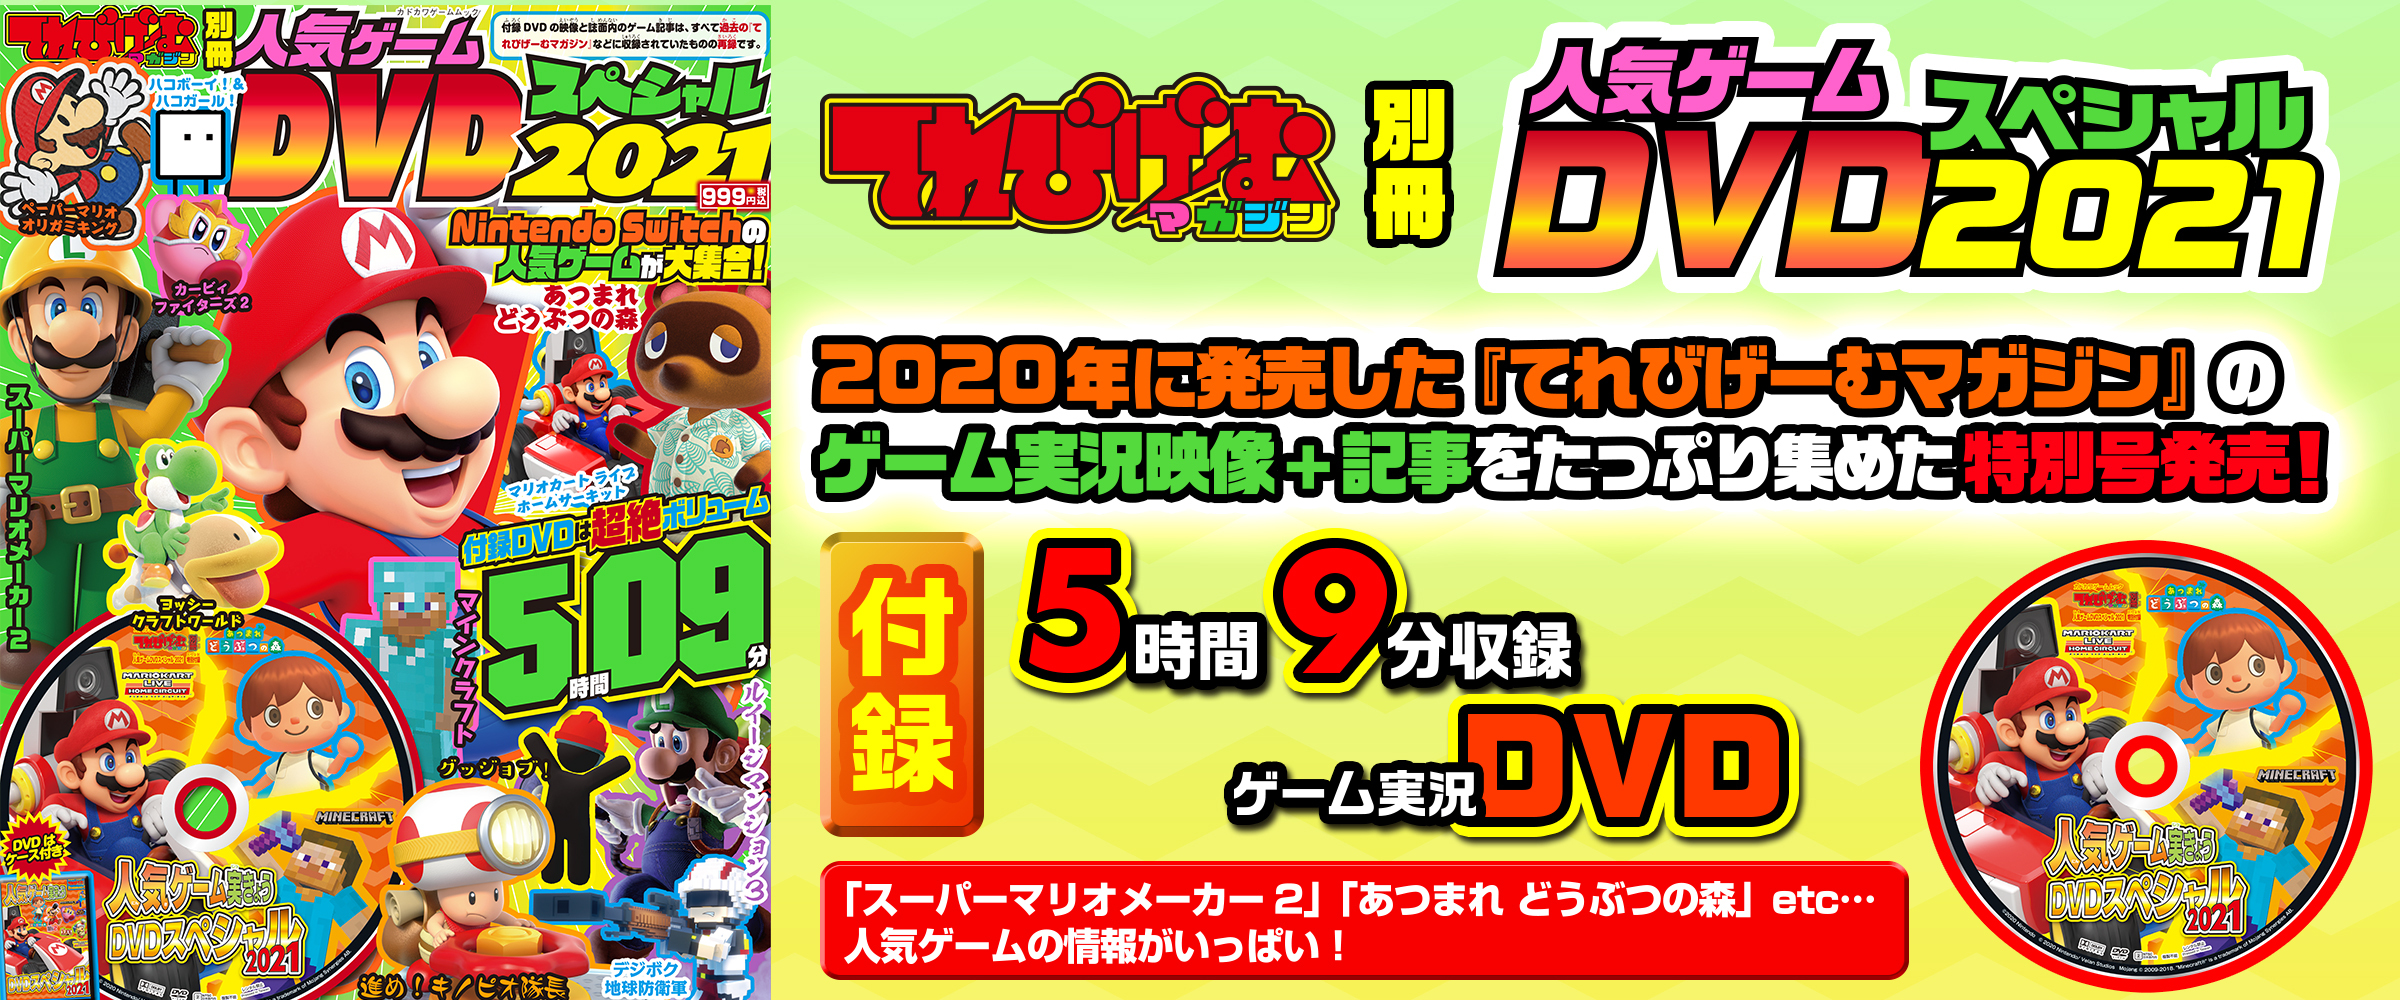 あつまれ どうぶつの森 スーパーマリオメーカー2 など人気ゲームの情報が満載 オススメの記事 Dvdが1冊に てれびげーむマガジン別冊 人気ゲーム Dvdスペシャル 21 が本日発売 株式会社kadokawaのプレスリリース